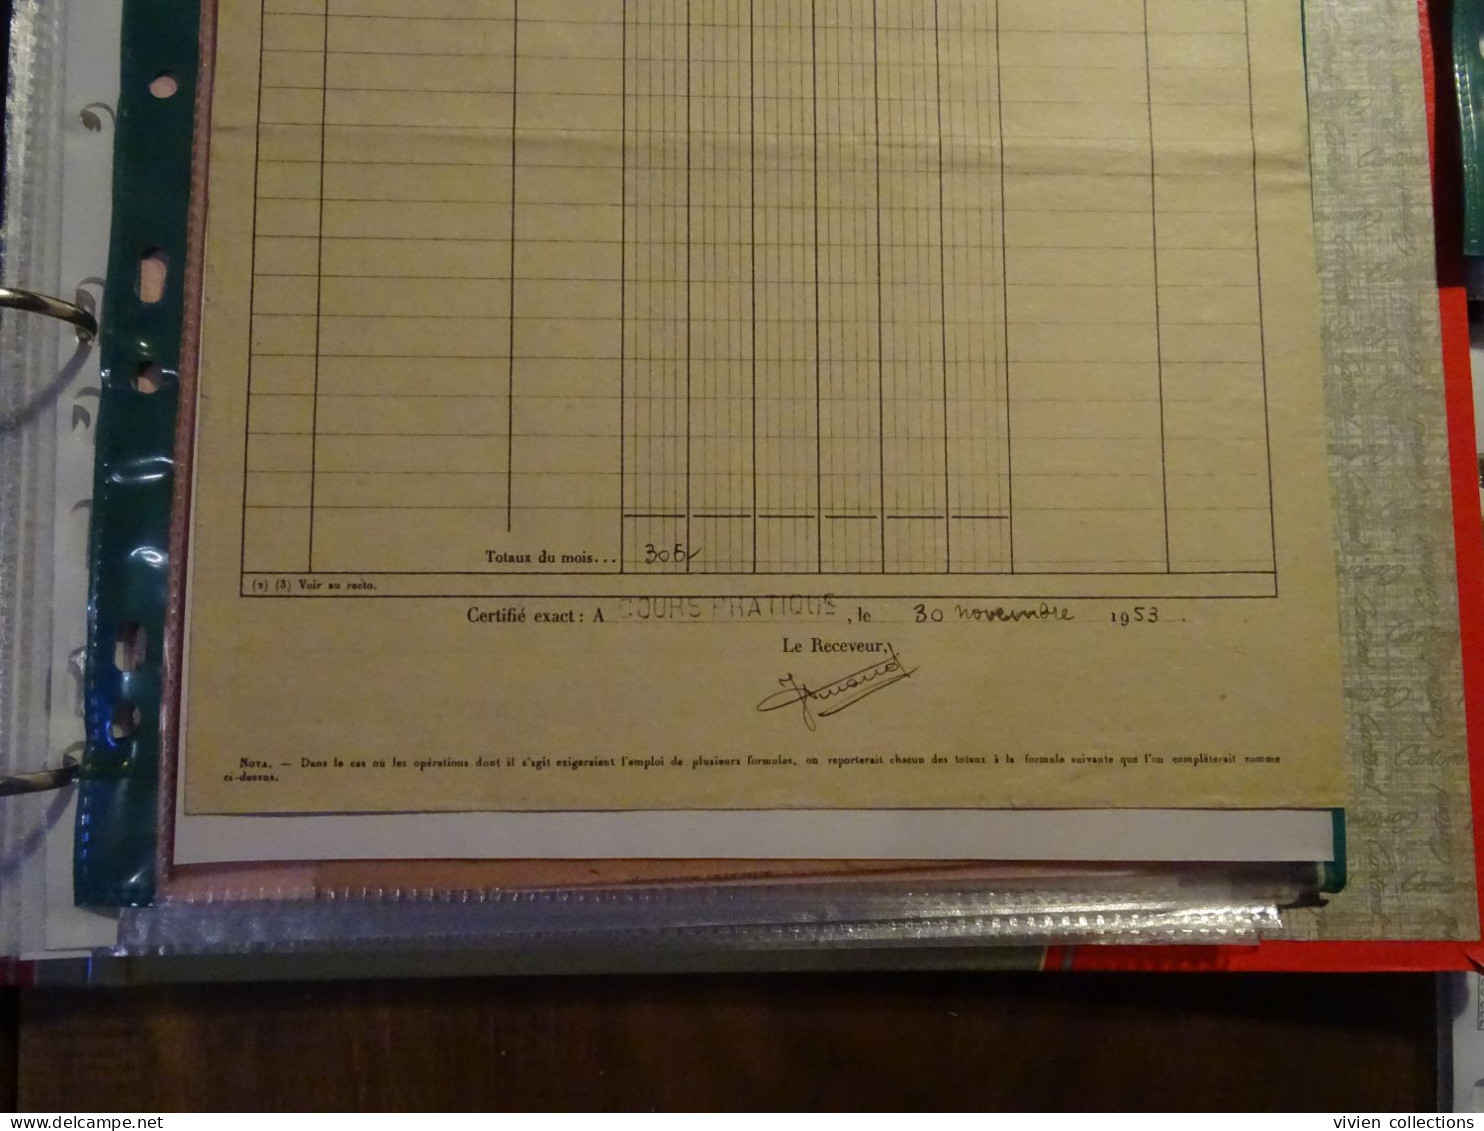 France cours pratique instruction Orléans 1953 télégramme annulé avant transmission et remboursement des taxes